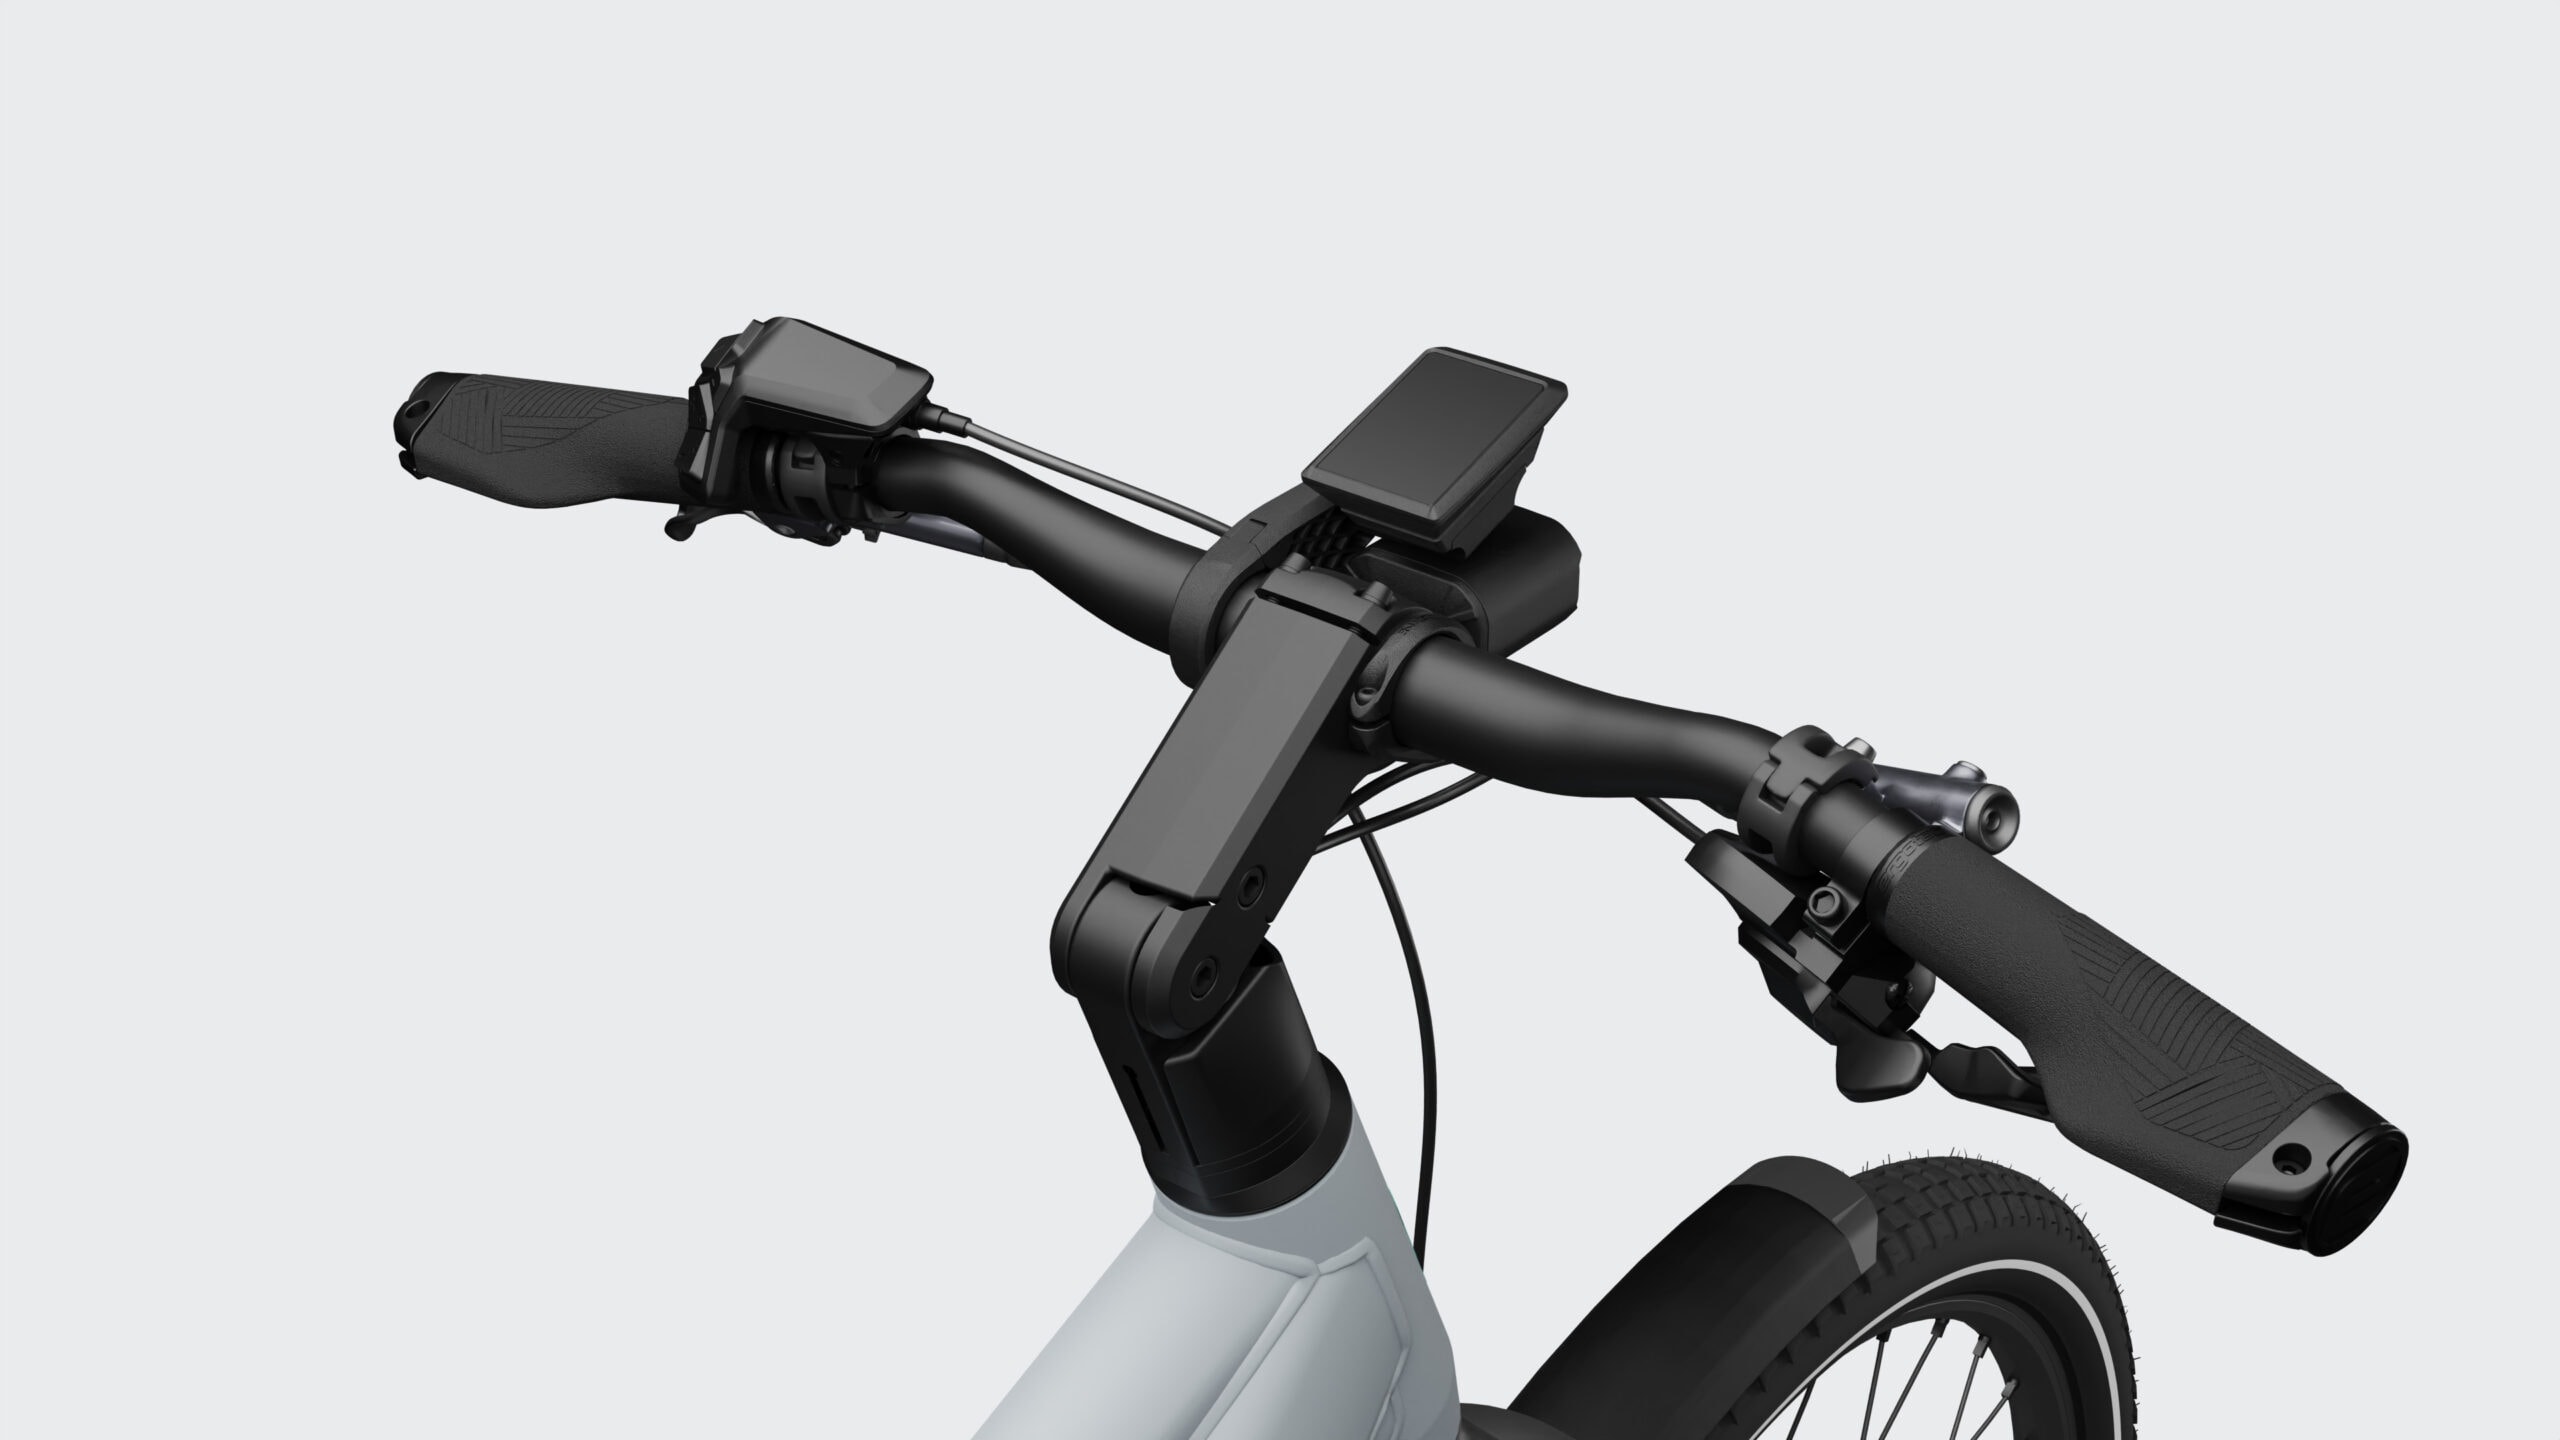 E-Bike Trekking Pro Diamant Gray 4K Cam Cu 01 V02 Scaled - Advanced Ebike